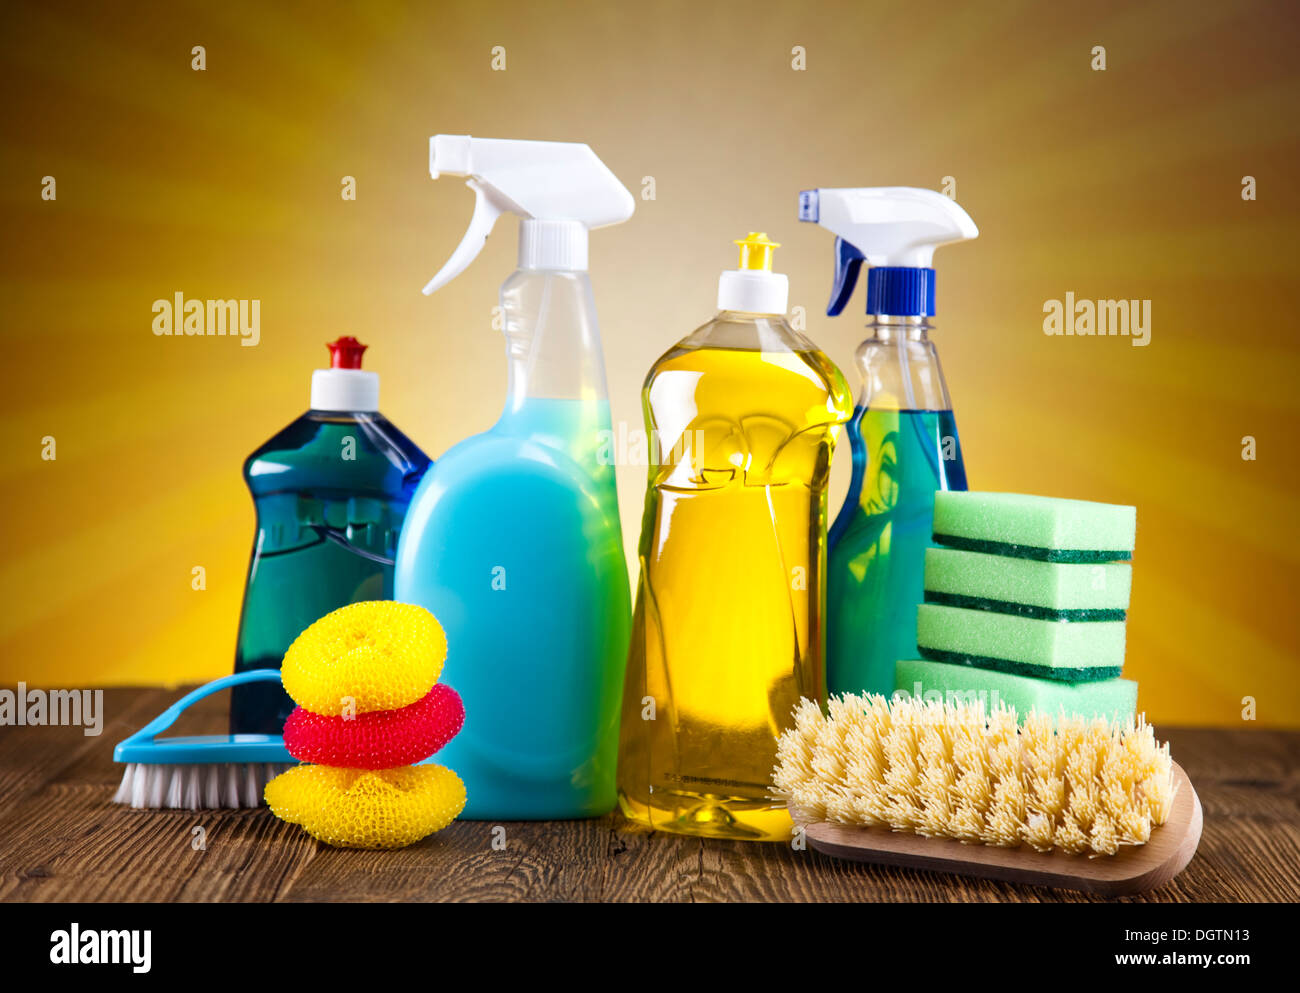 Ampia gamma di prodotti per la pulizia Foto Stock